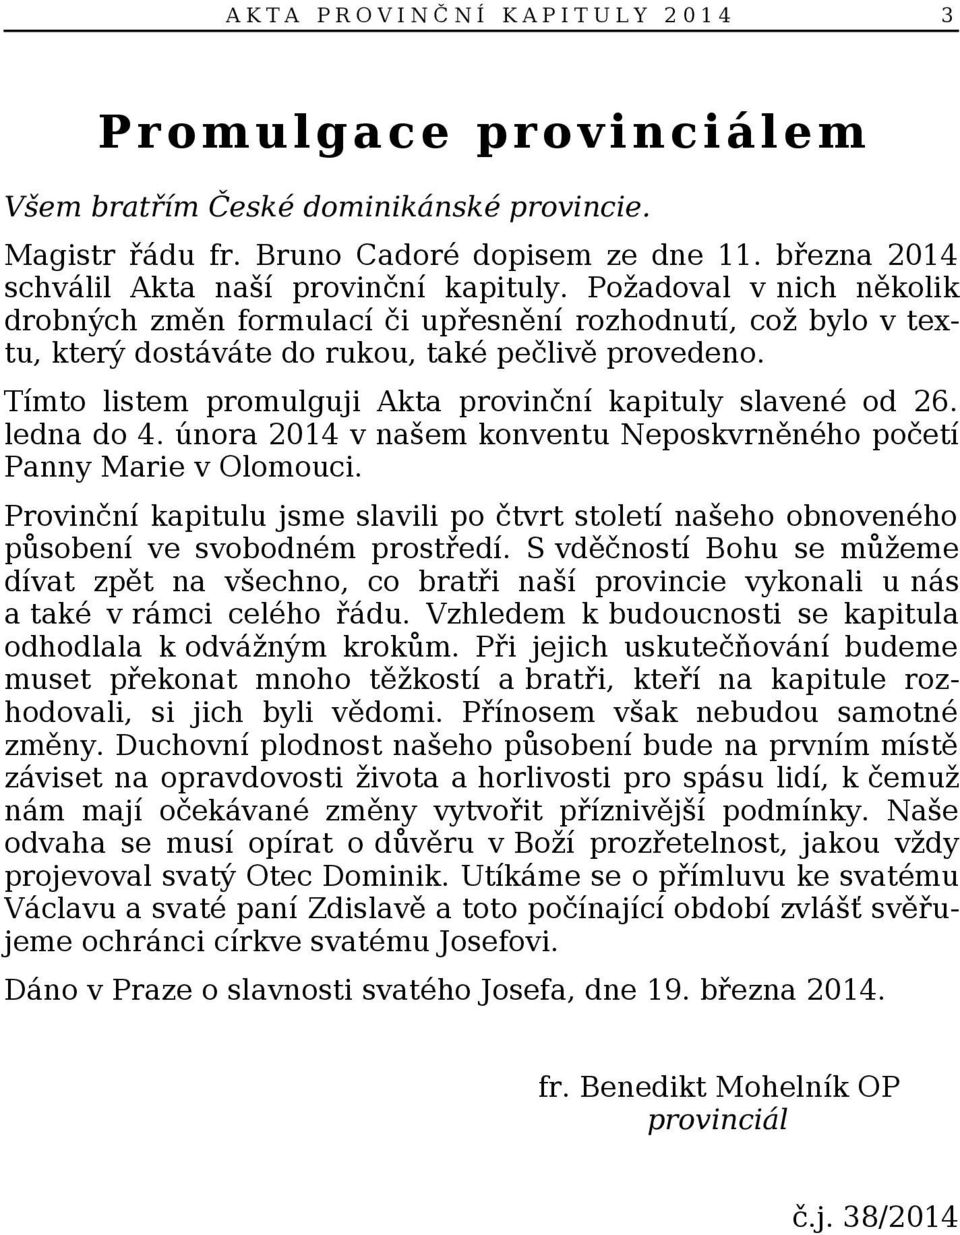 Tímto listem promulguji Akta provinční kapituly slavené od 26. ledna do 4. února 2014 v našem konventu Neposkvrněného početí Panny Marie v Olomouci.